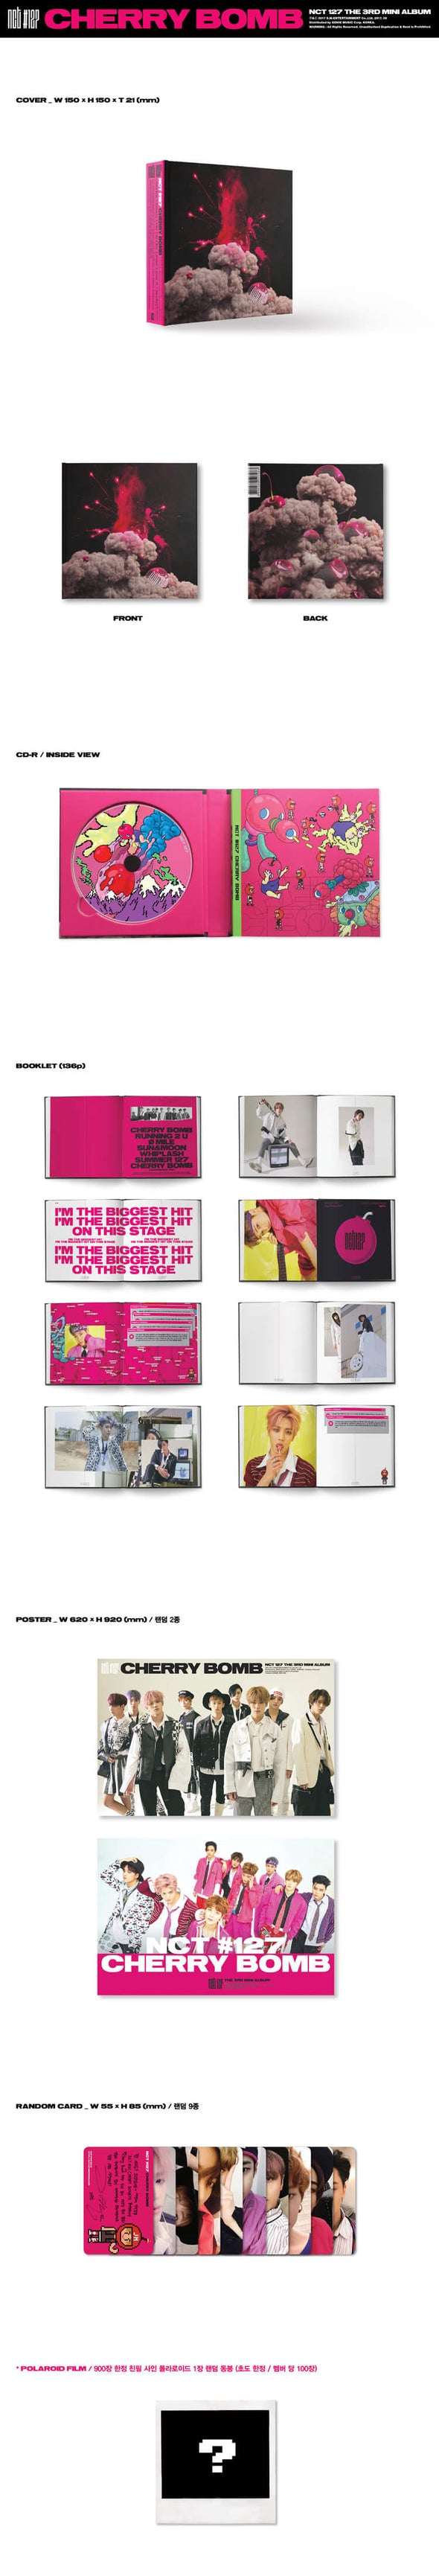 NCT 127 - 3rd Mini Album 'Cherry Bomb'